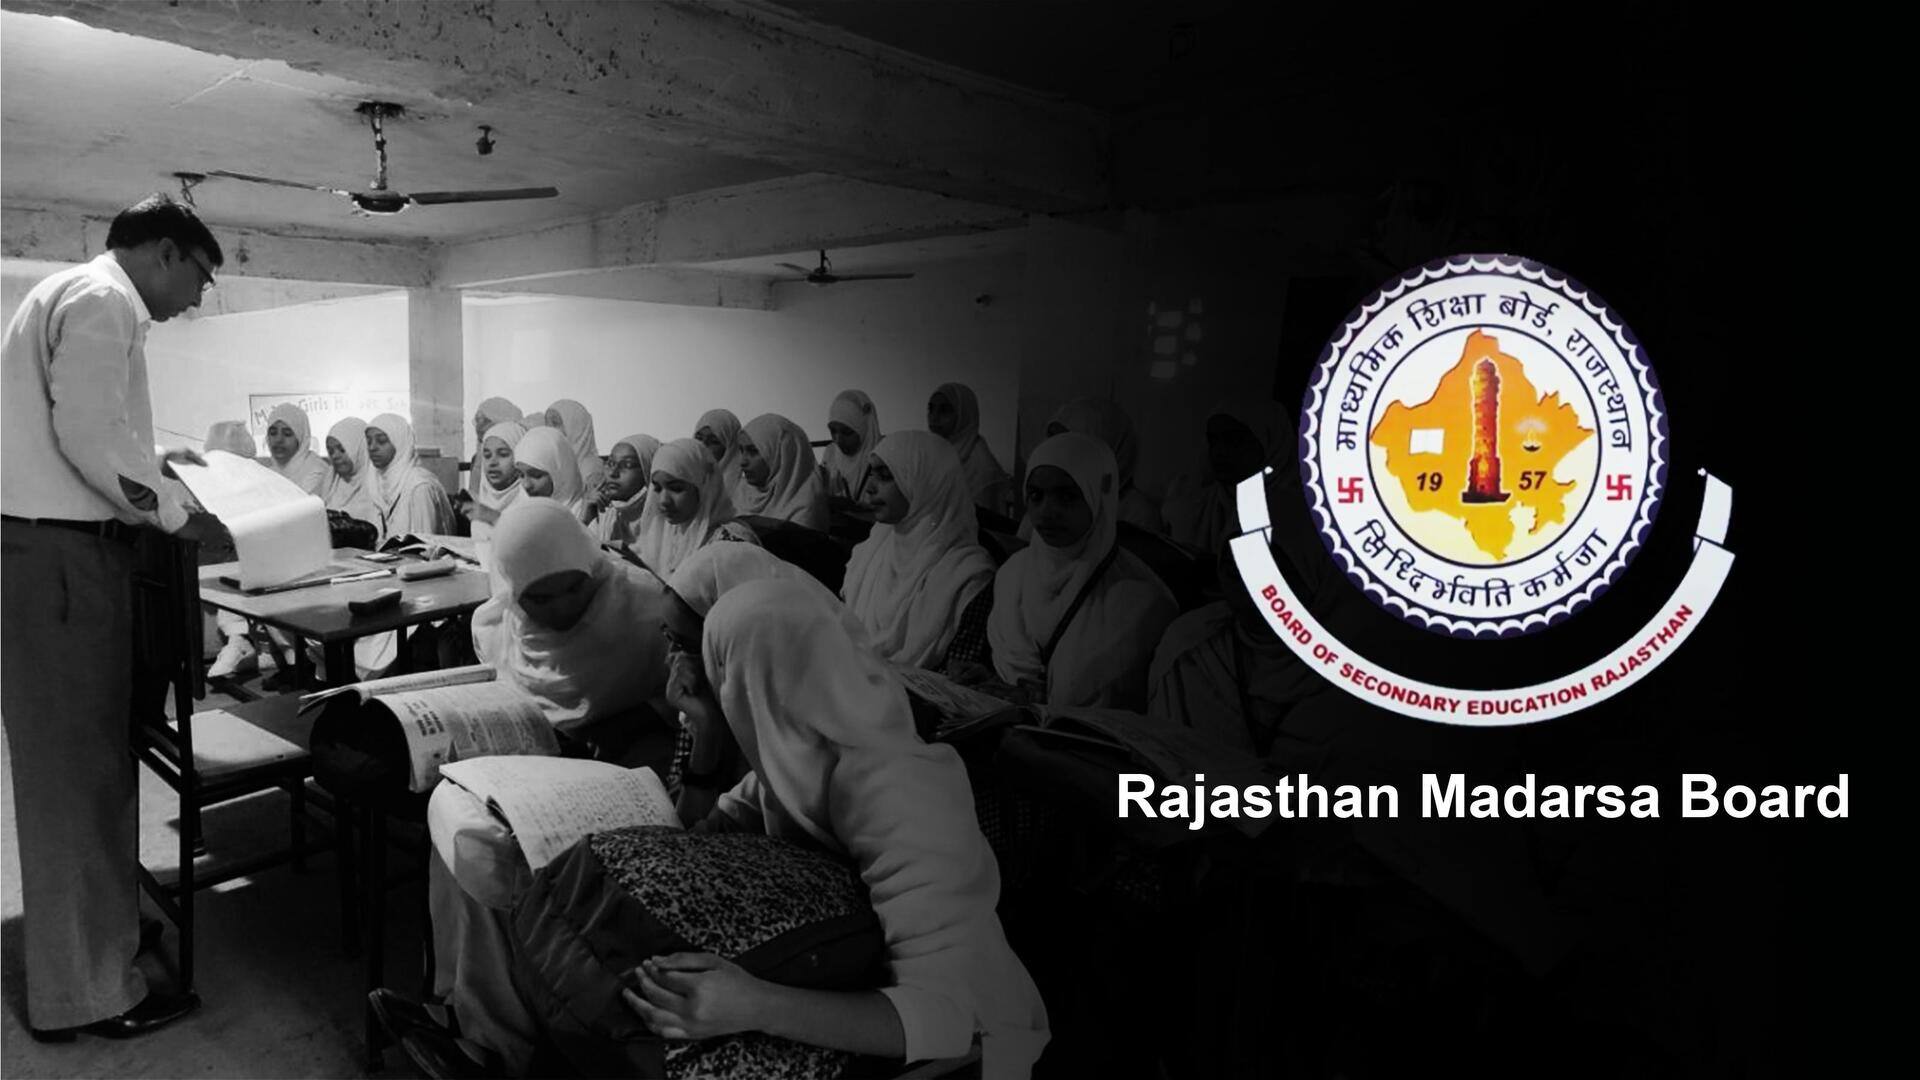 राजस्थान मदरसा बोर्ड में 6,843 पदों पर भर्ती प्रक्रिया स्थगित, आज से शुरू होने थे पंजीकरण